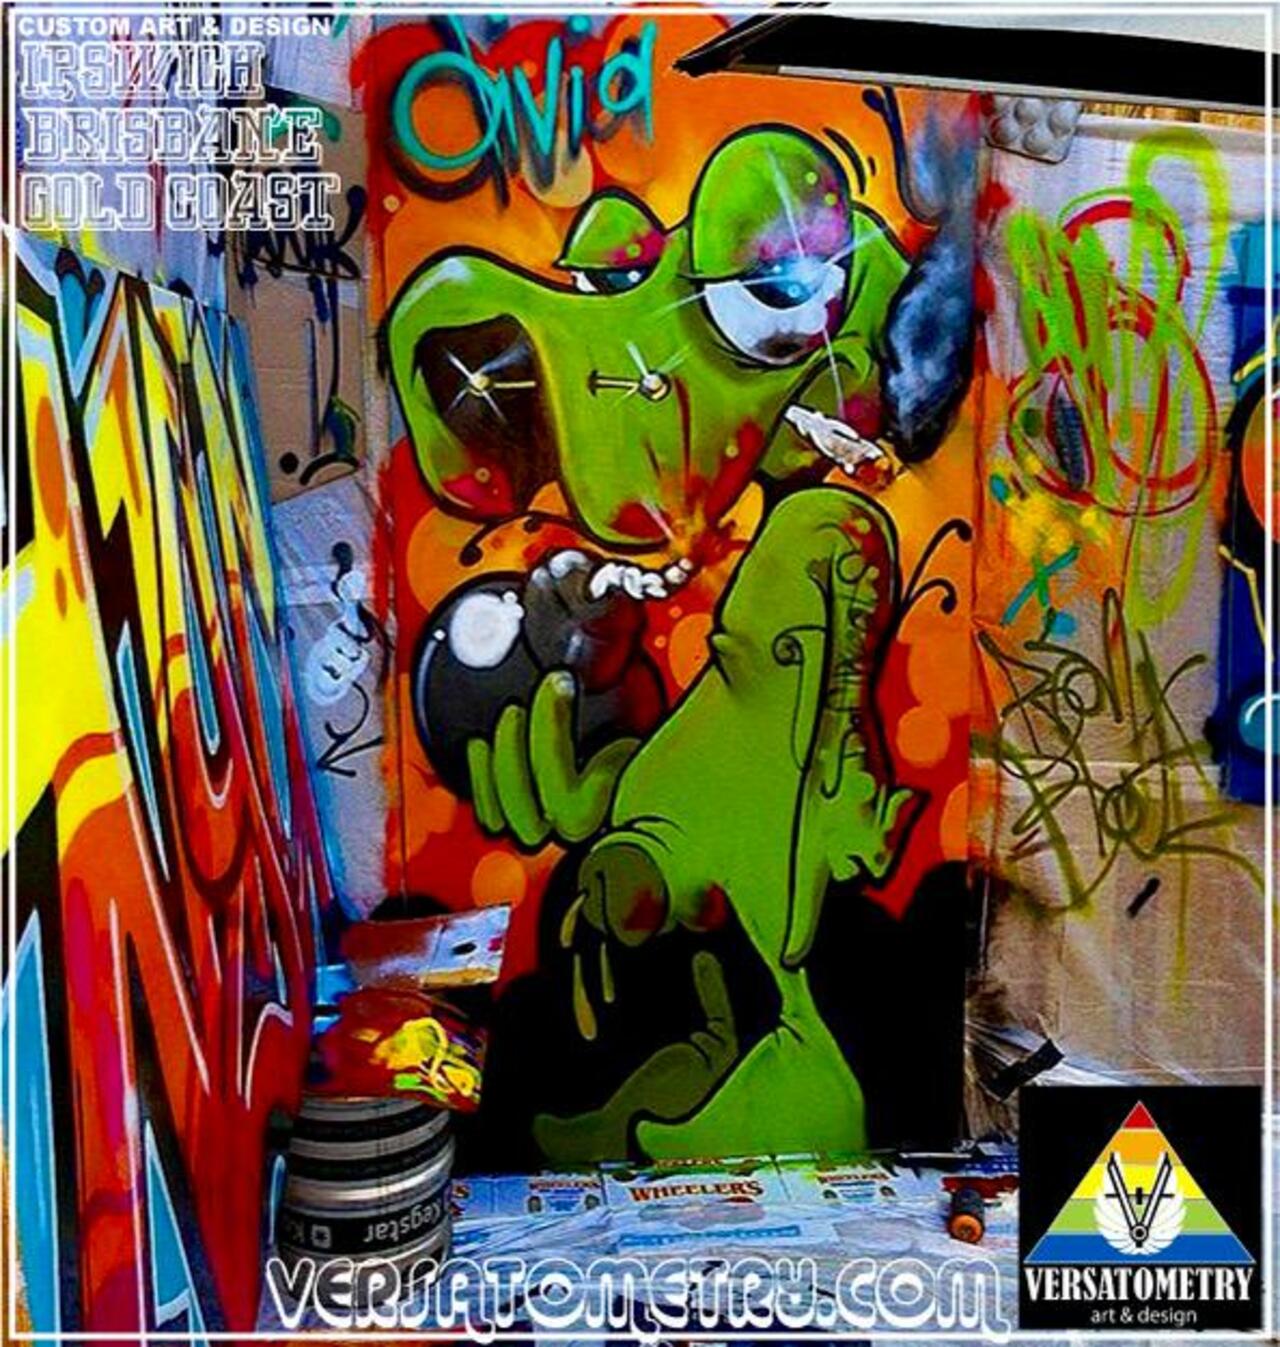 Check this out: VERSATOMETRY Custom Art & Design Brisbane 2015. http://versatometry.com #Graffiti #StreetArt #AUS http://t.co/EfzQhtTWxP